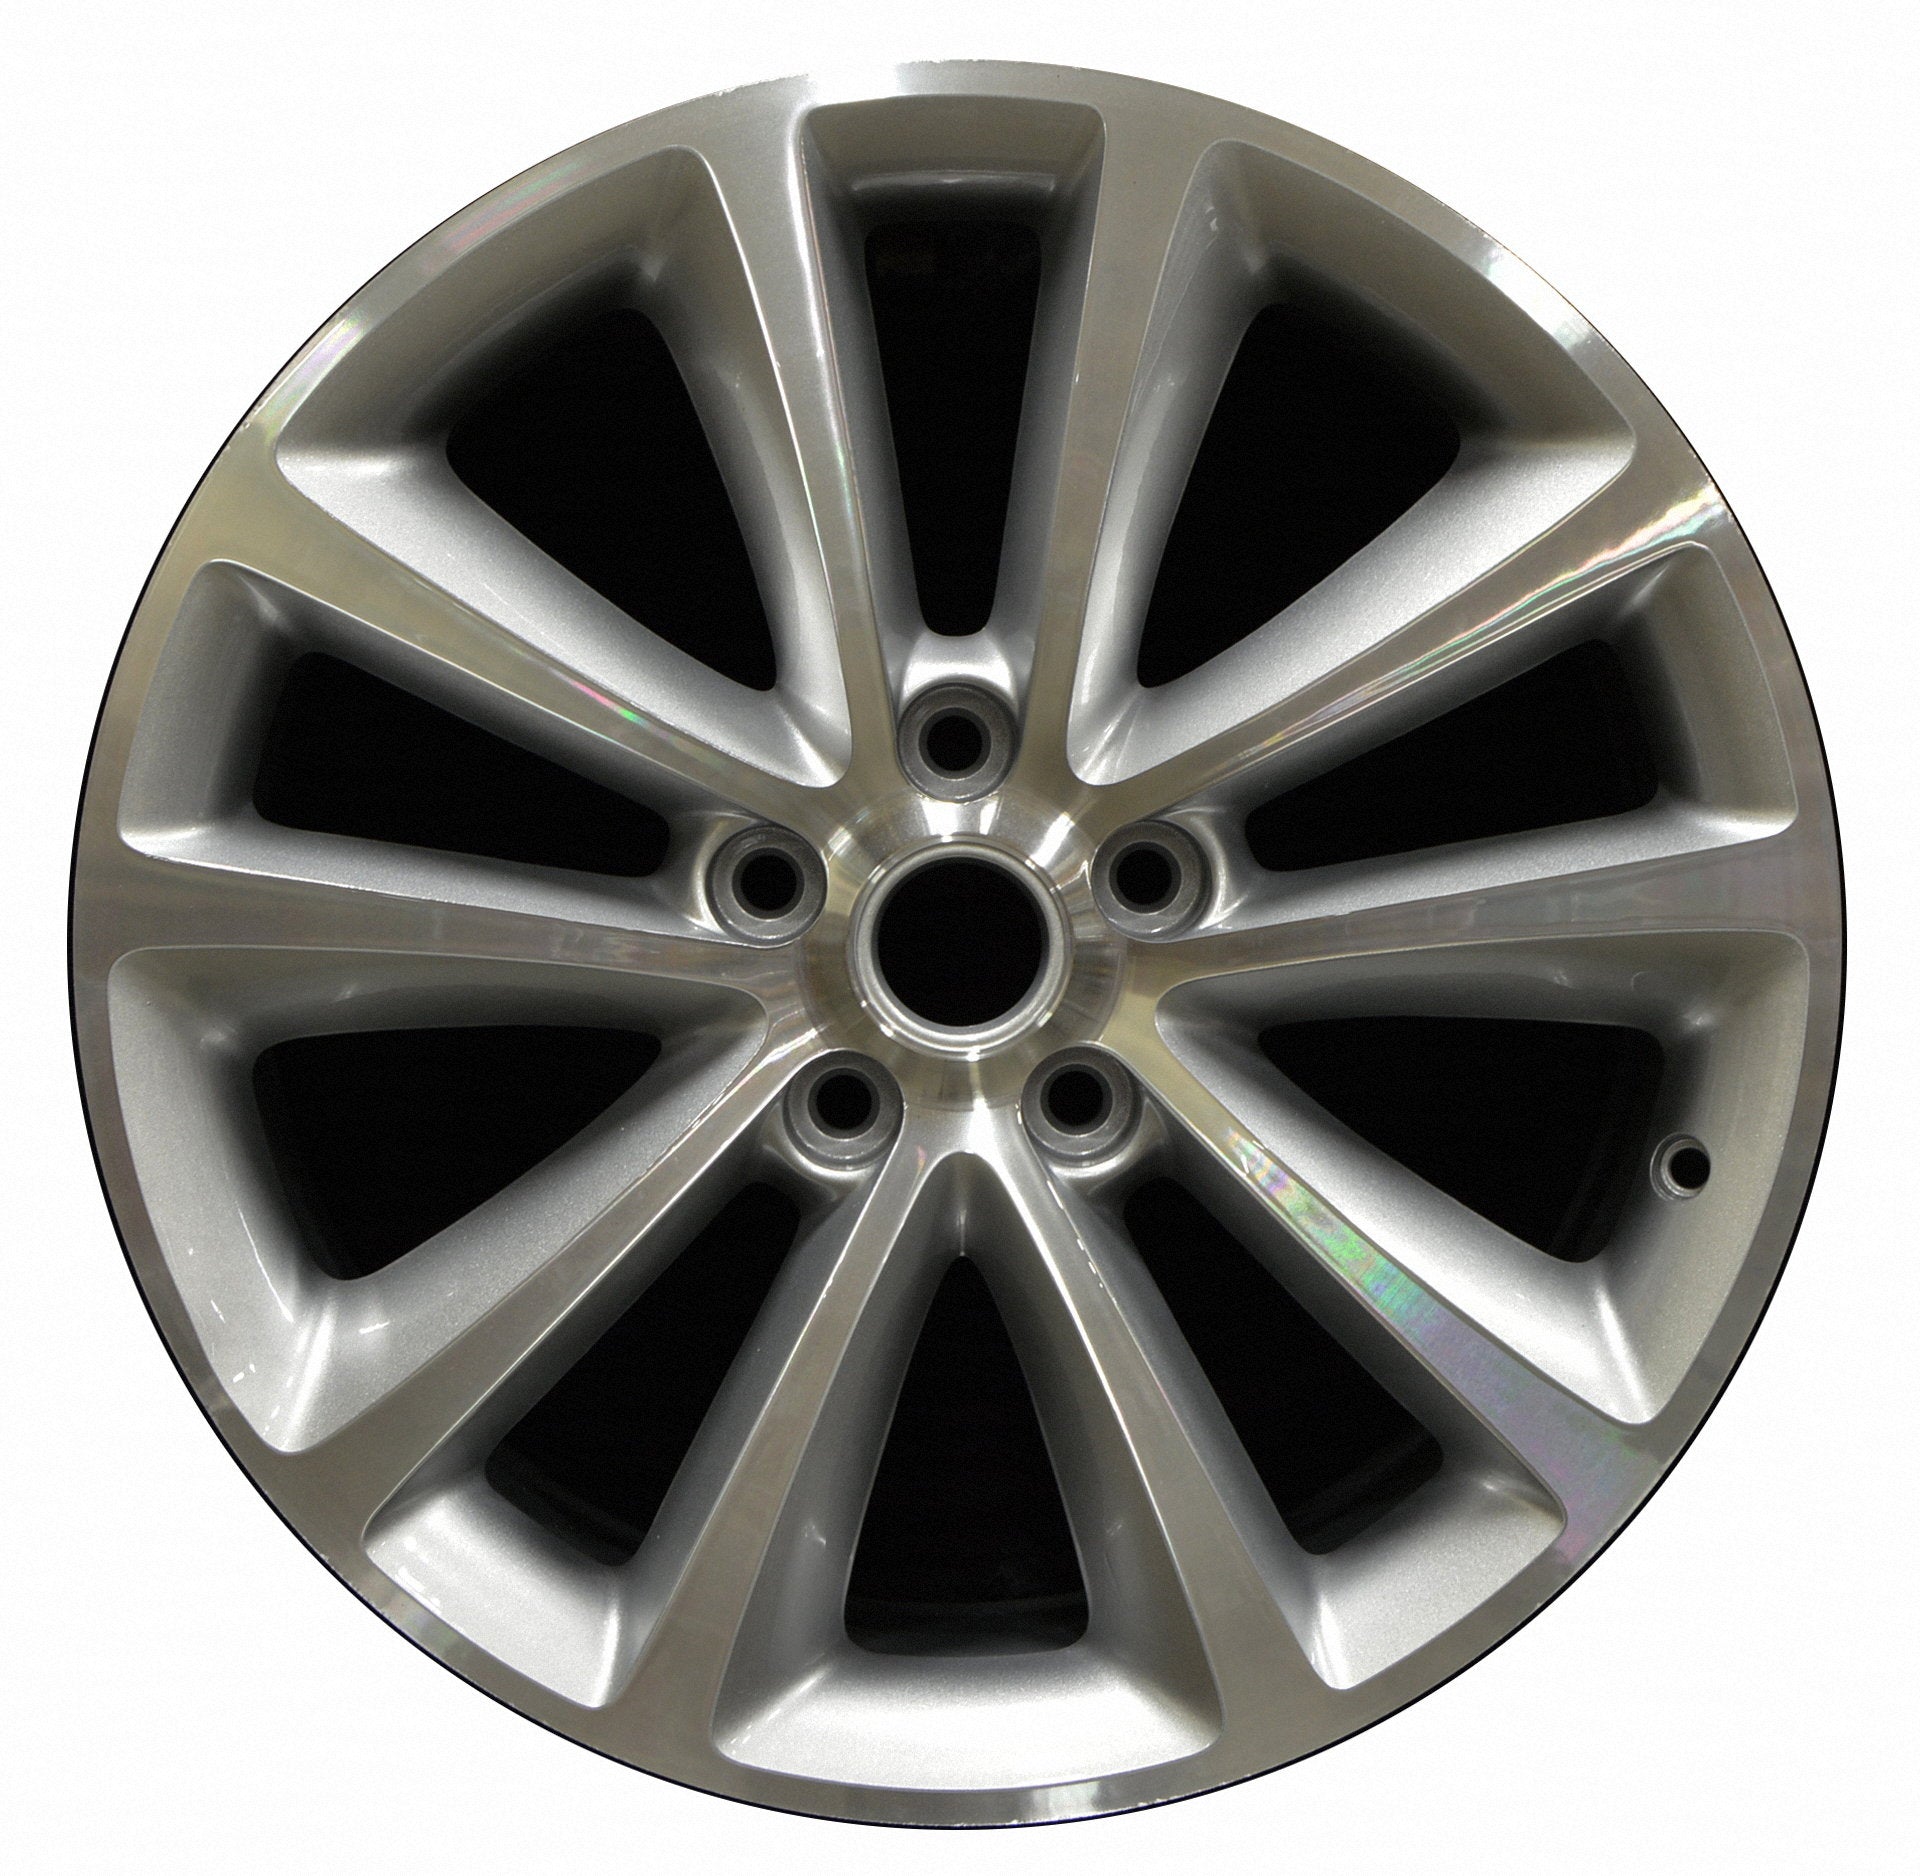 Buick Verano  2012, 2013, 2014, 2015 Factory OEM Car Wheel Size 18x8 Alloy WAO.4111.PS09.MA